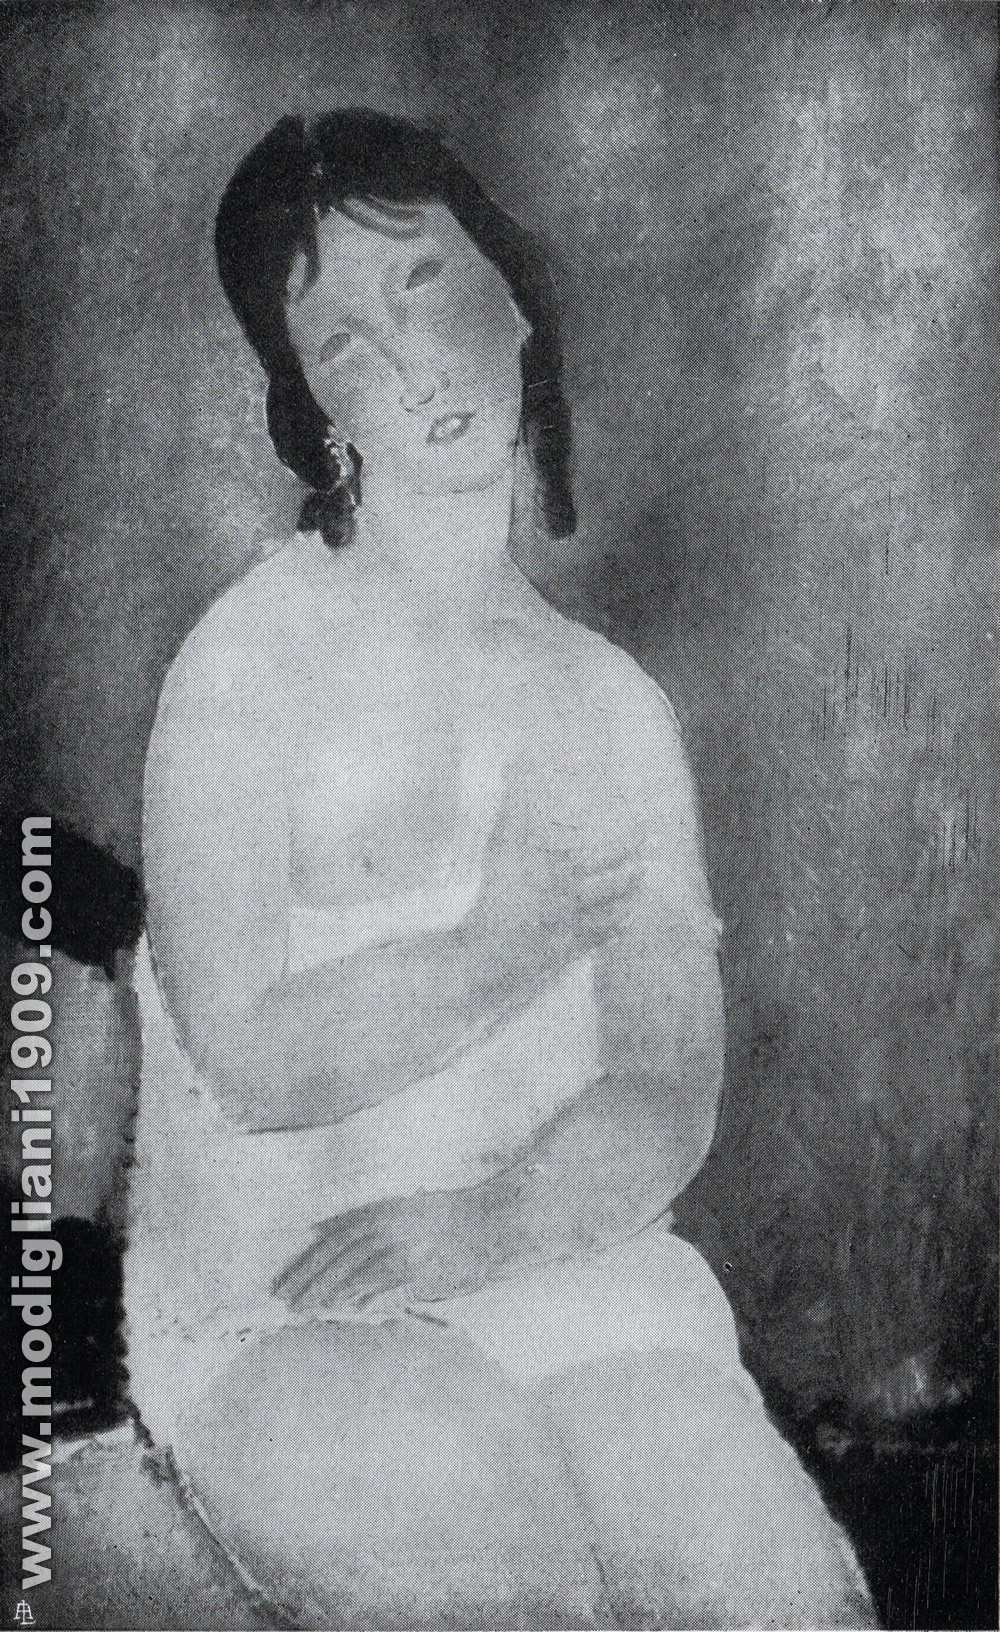 Amedeo Modigliani - Nudo rosa - 1918 - Bruxelles. Collezione René Gaffé